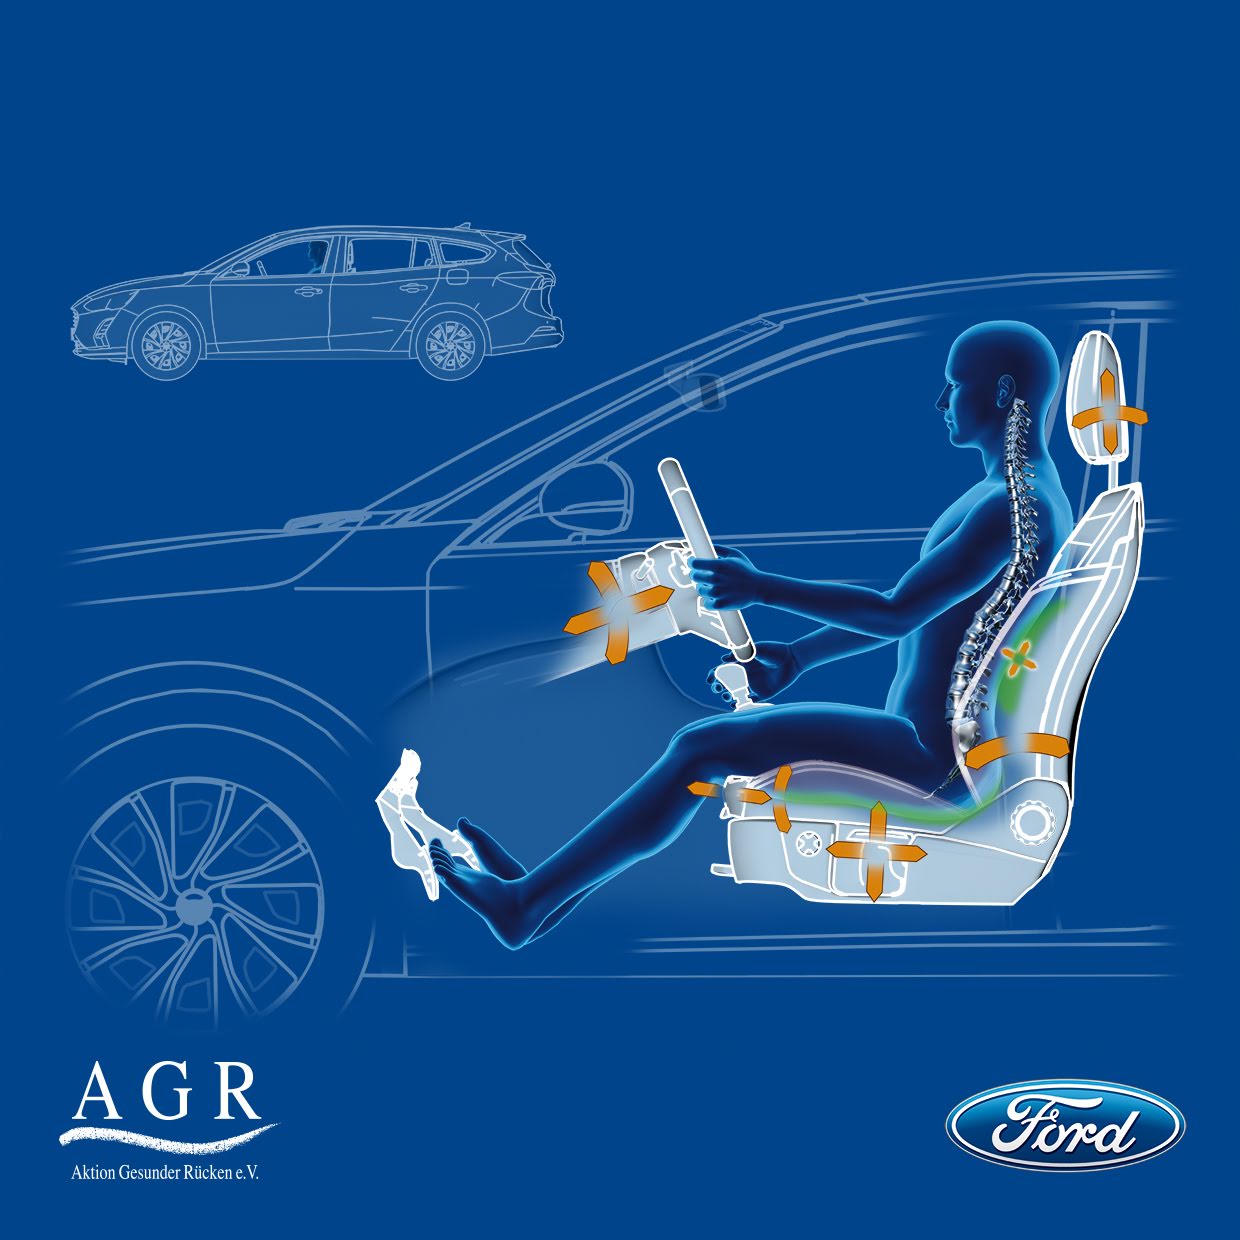 Ford Focus, i sedili ergonomici garantiscono più comfort per la schiena